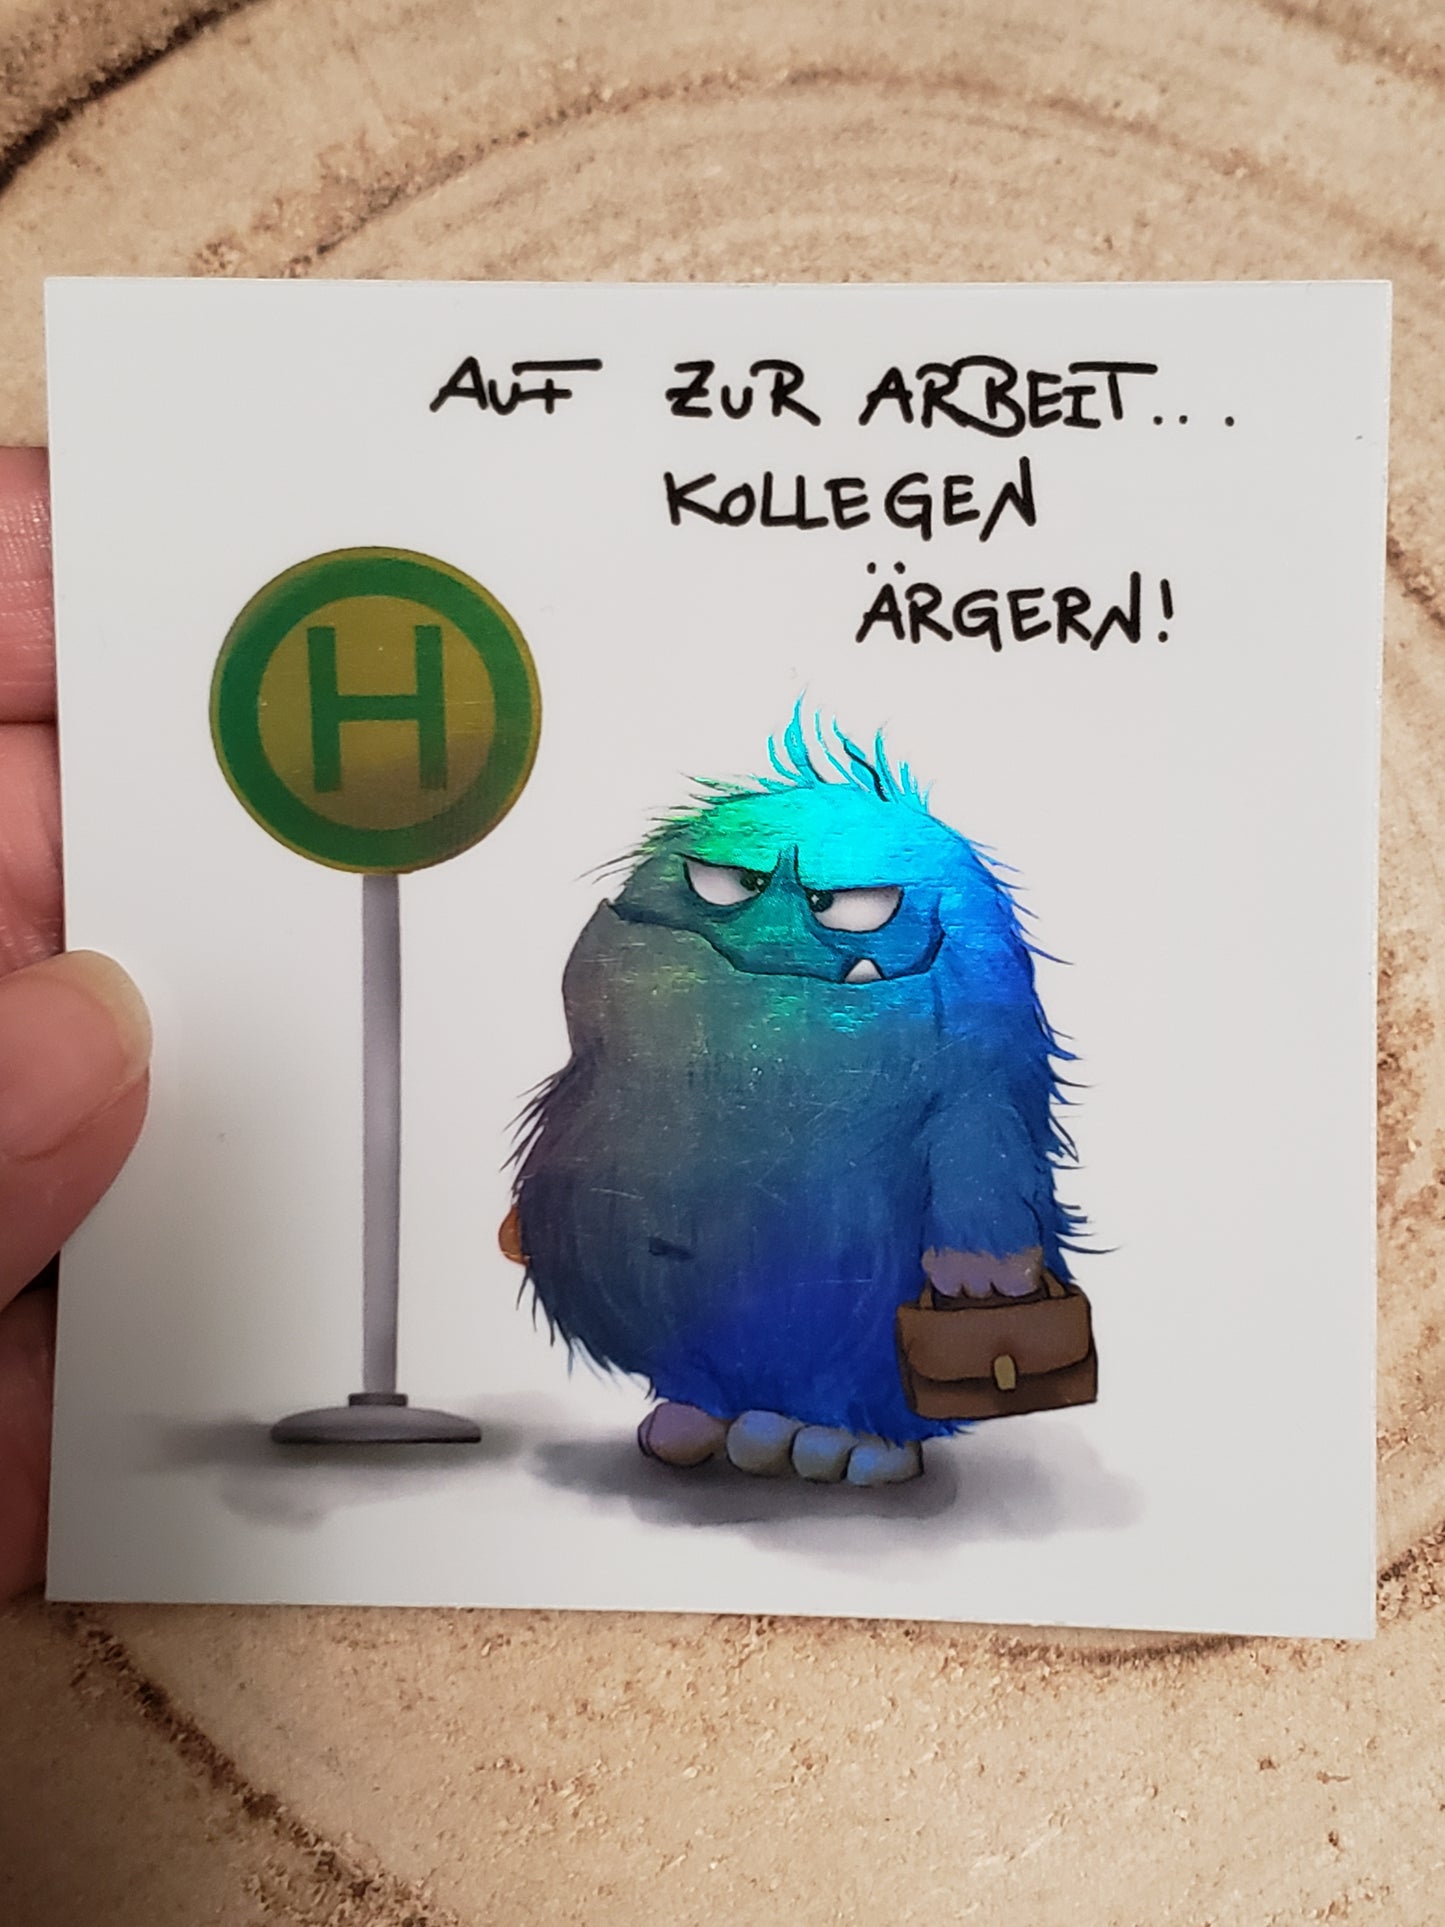 Sticker Hologram Kruegerhausdesign mit Monster und Spruch "Auf zur Arbeit..."